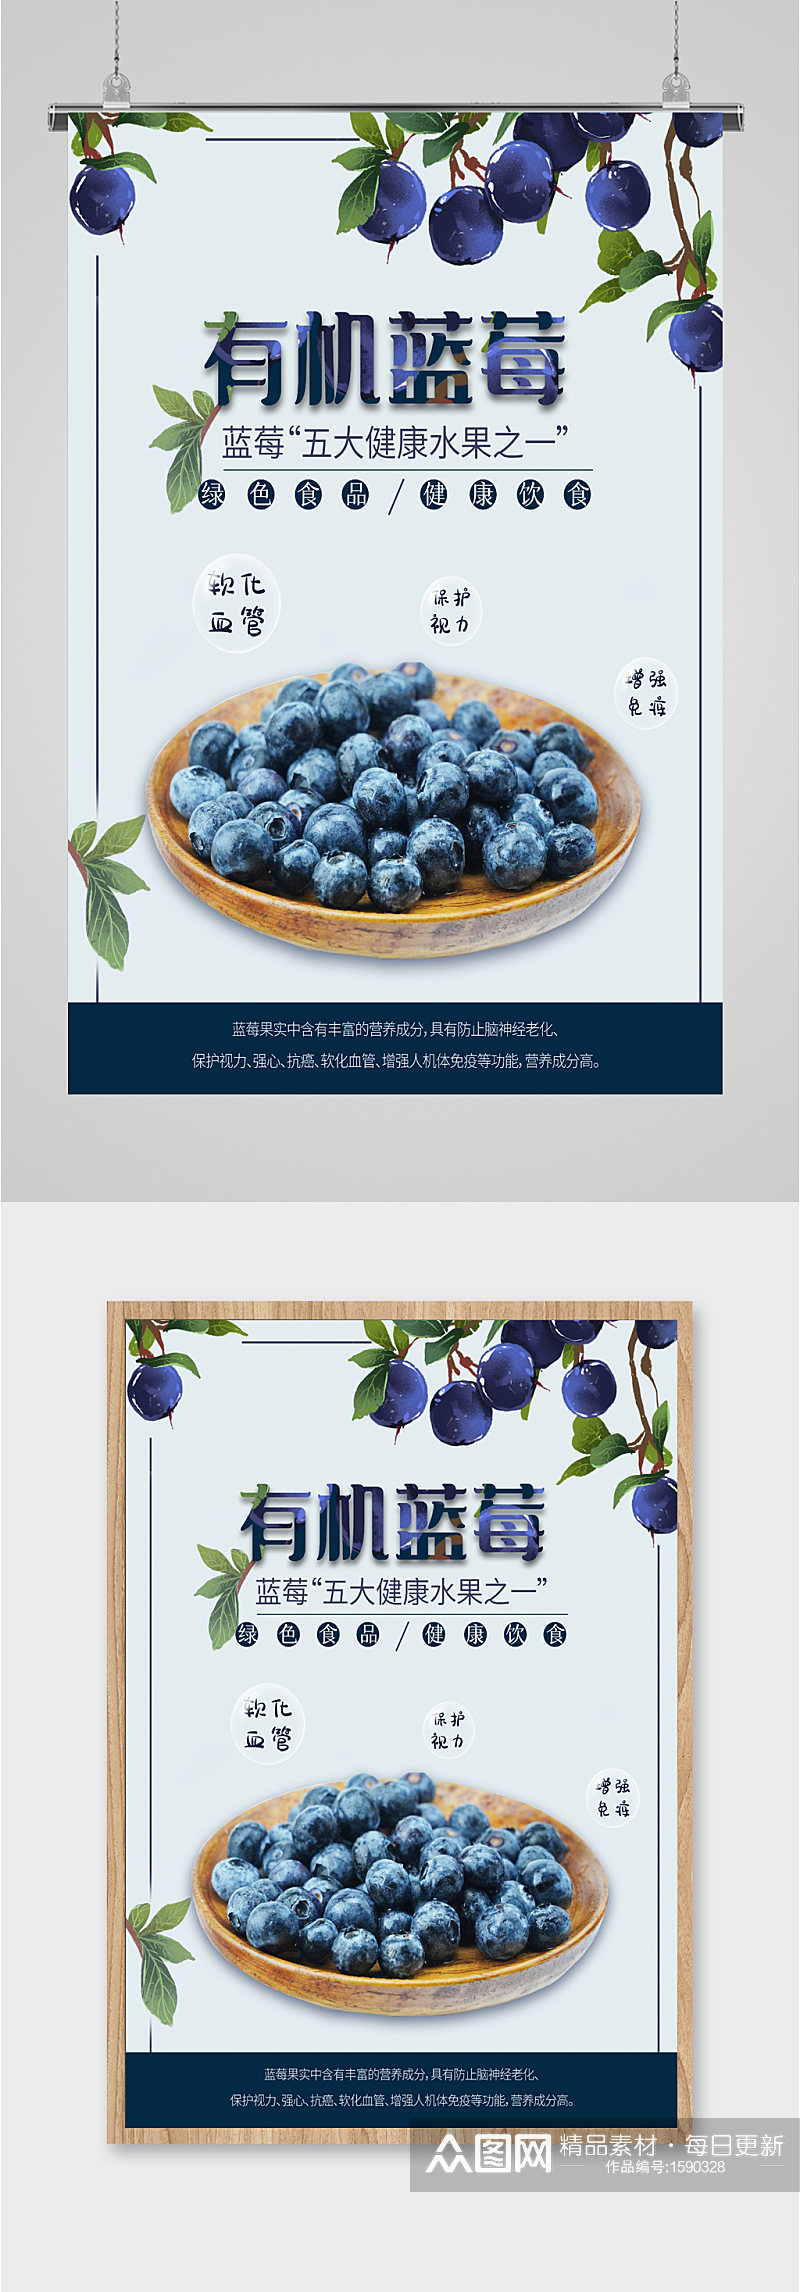 新鲜水果有机蓝莓宣传海报素材